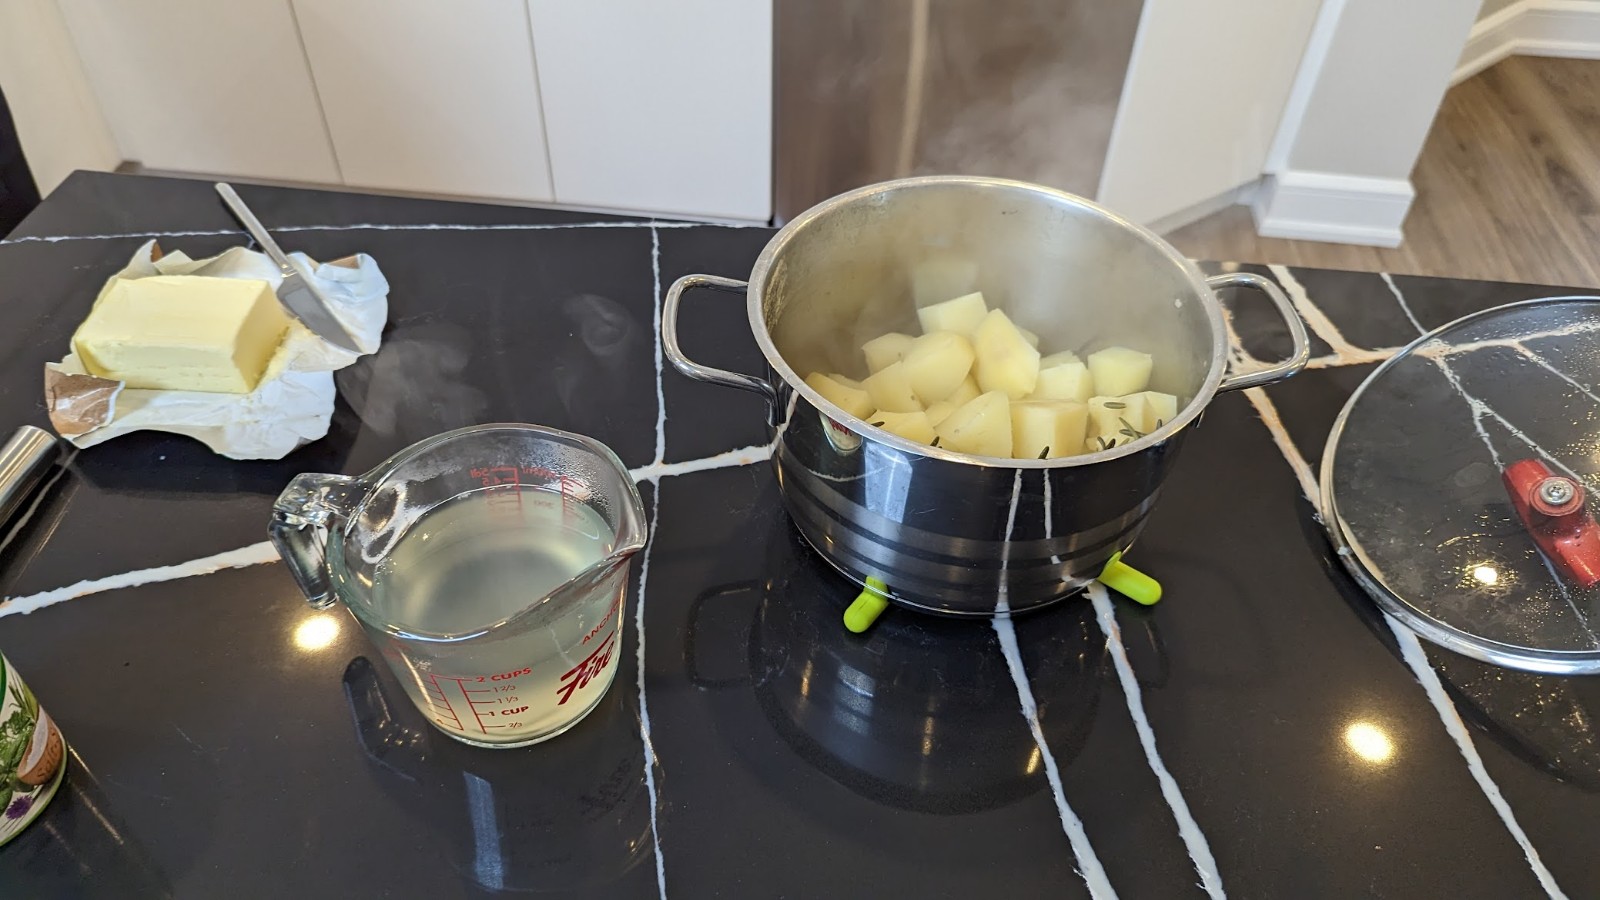 rosemary mashed potatoes